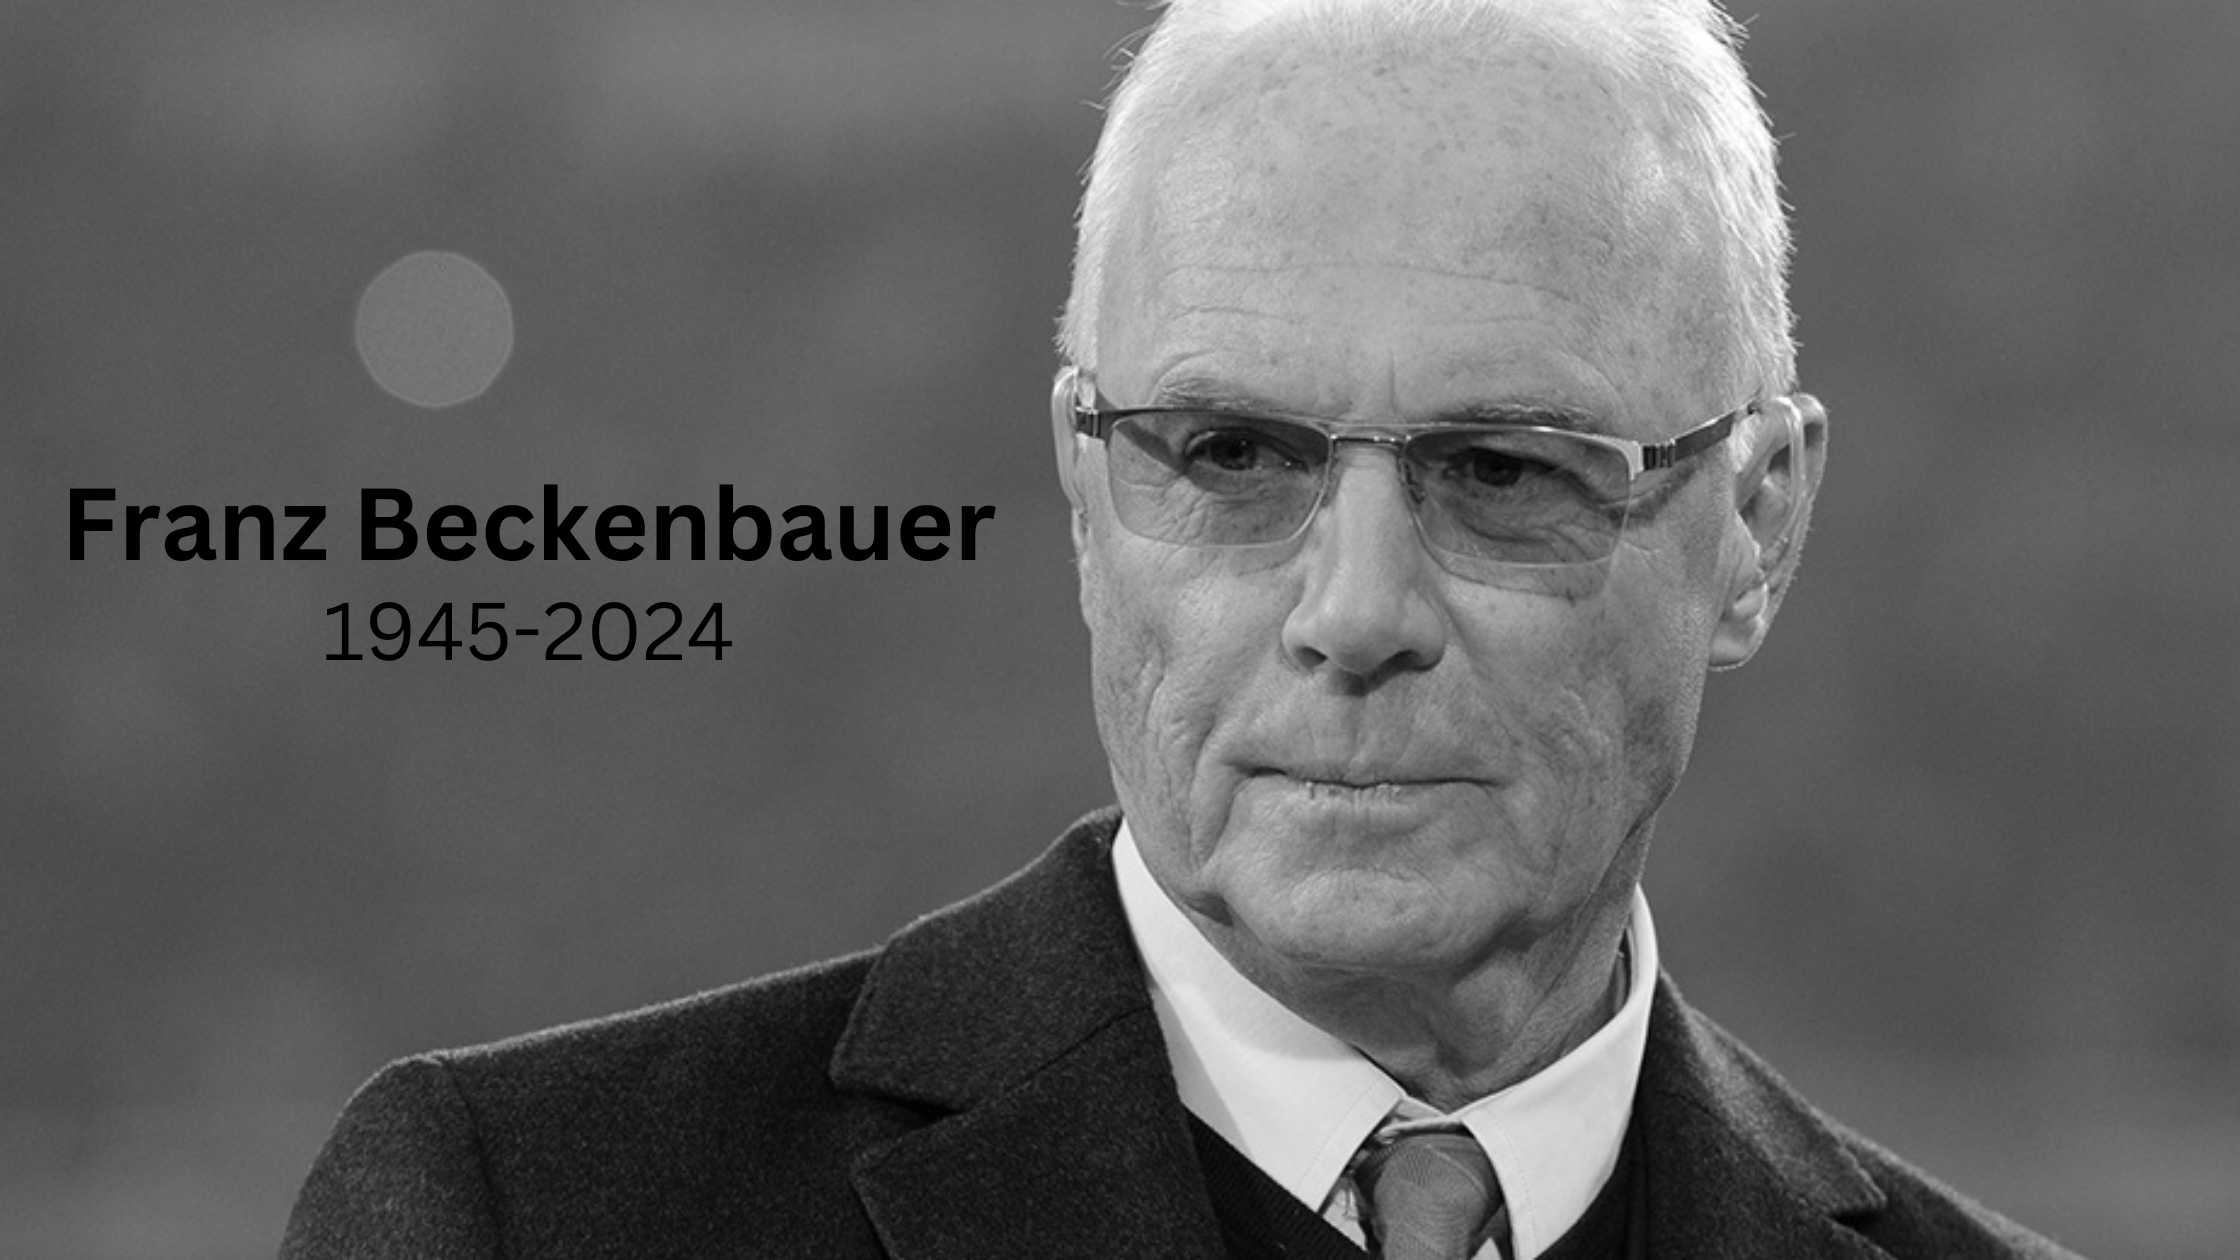 Franz Beckenbauer died at 78